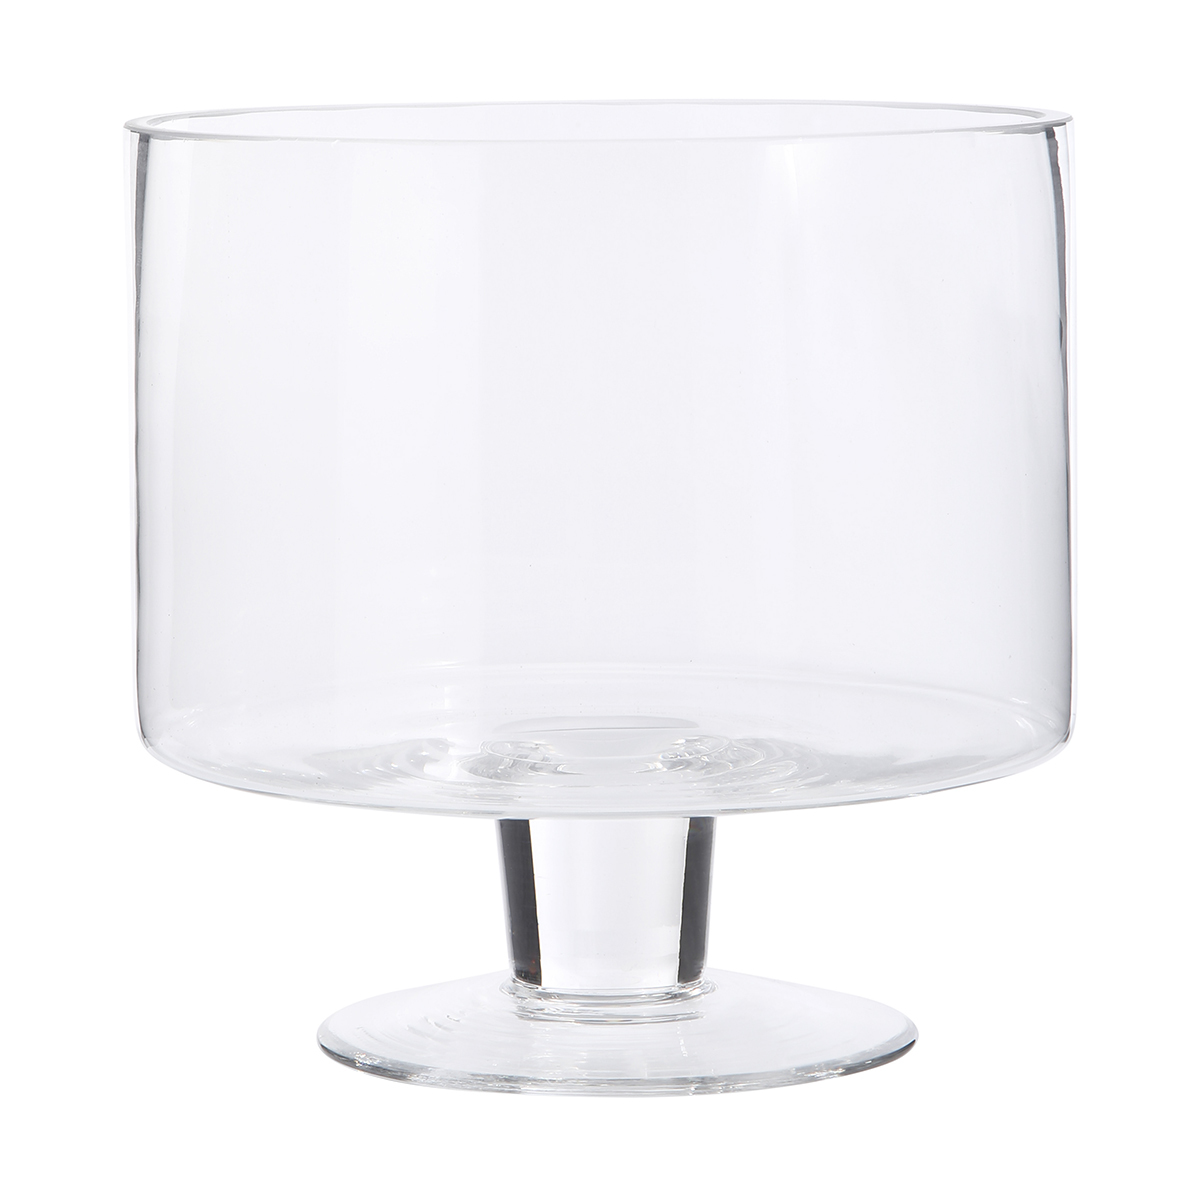 3.5L Glass Trifle Bowl